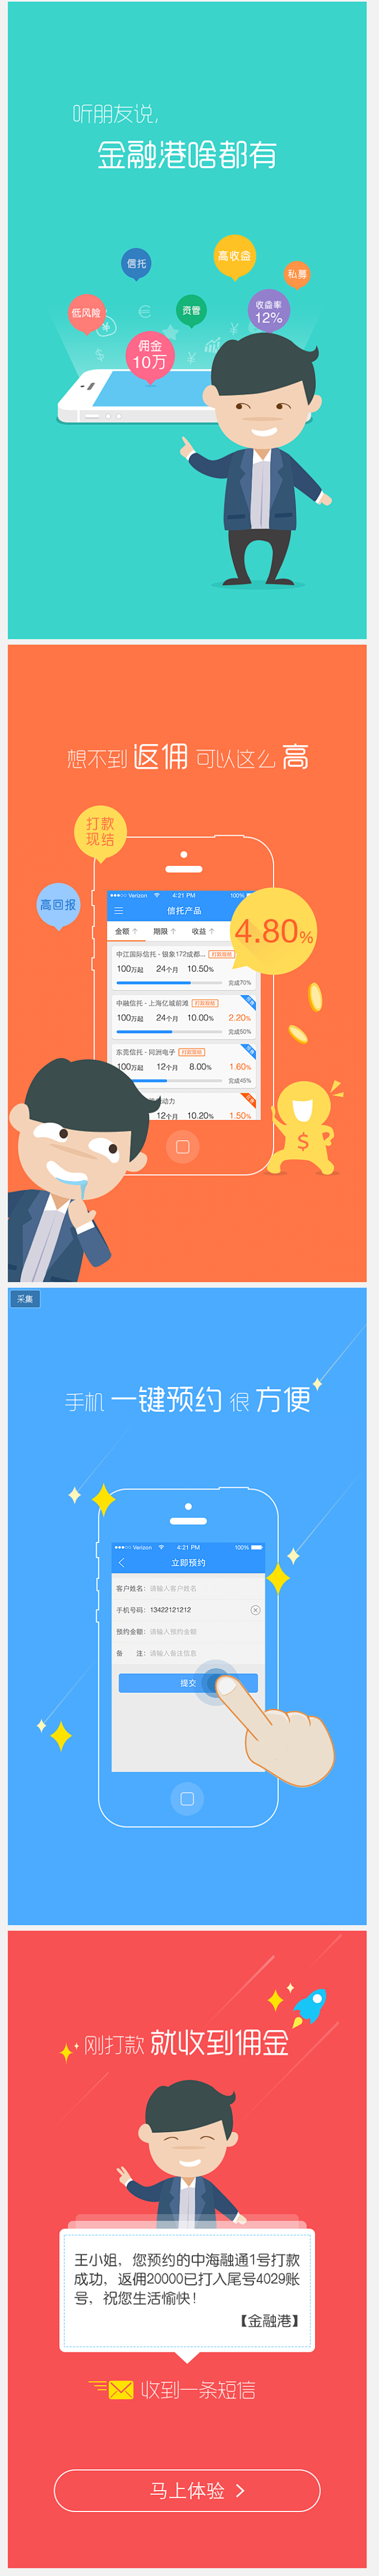 金融港app_v1.1_引导页-UI中国...